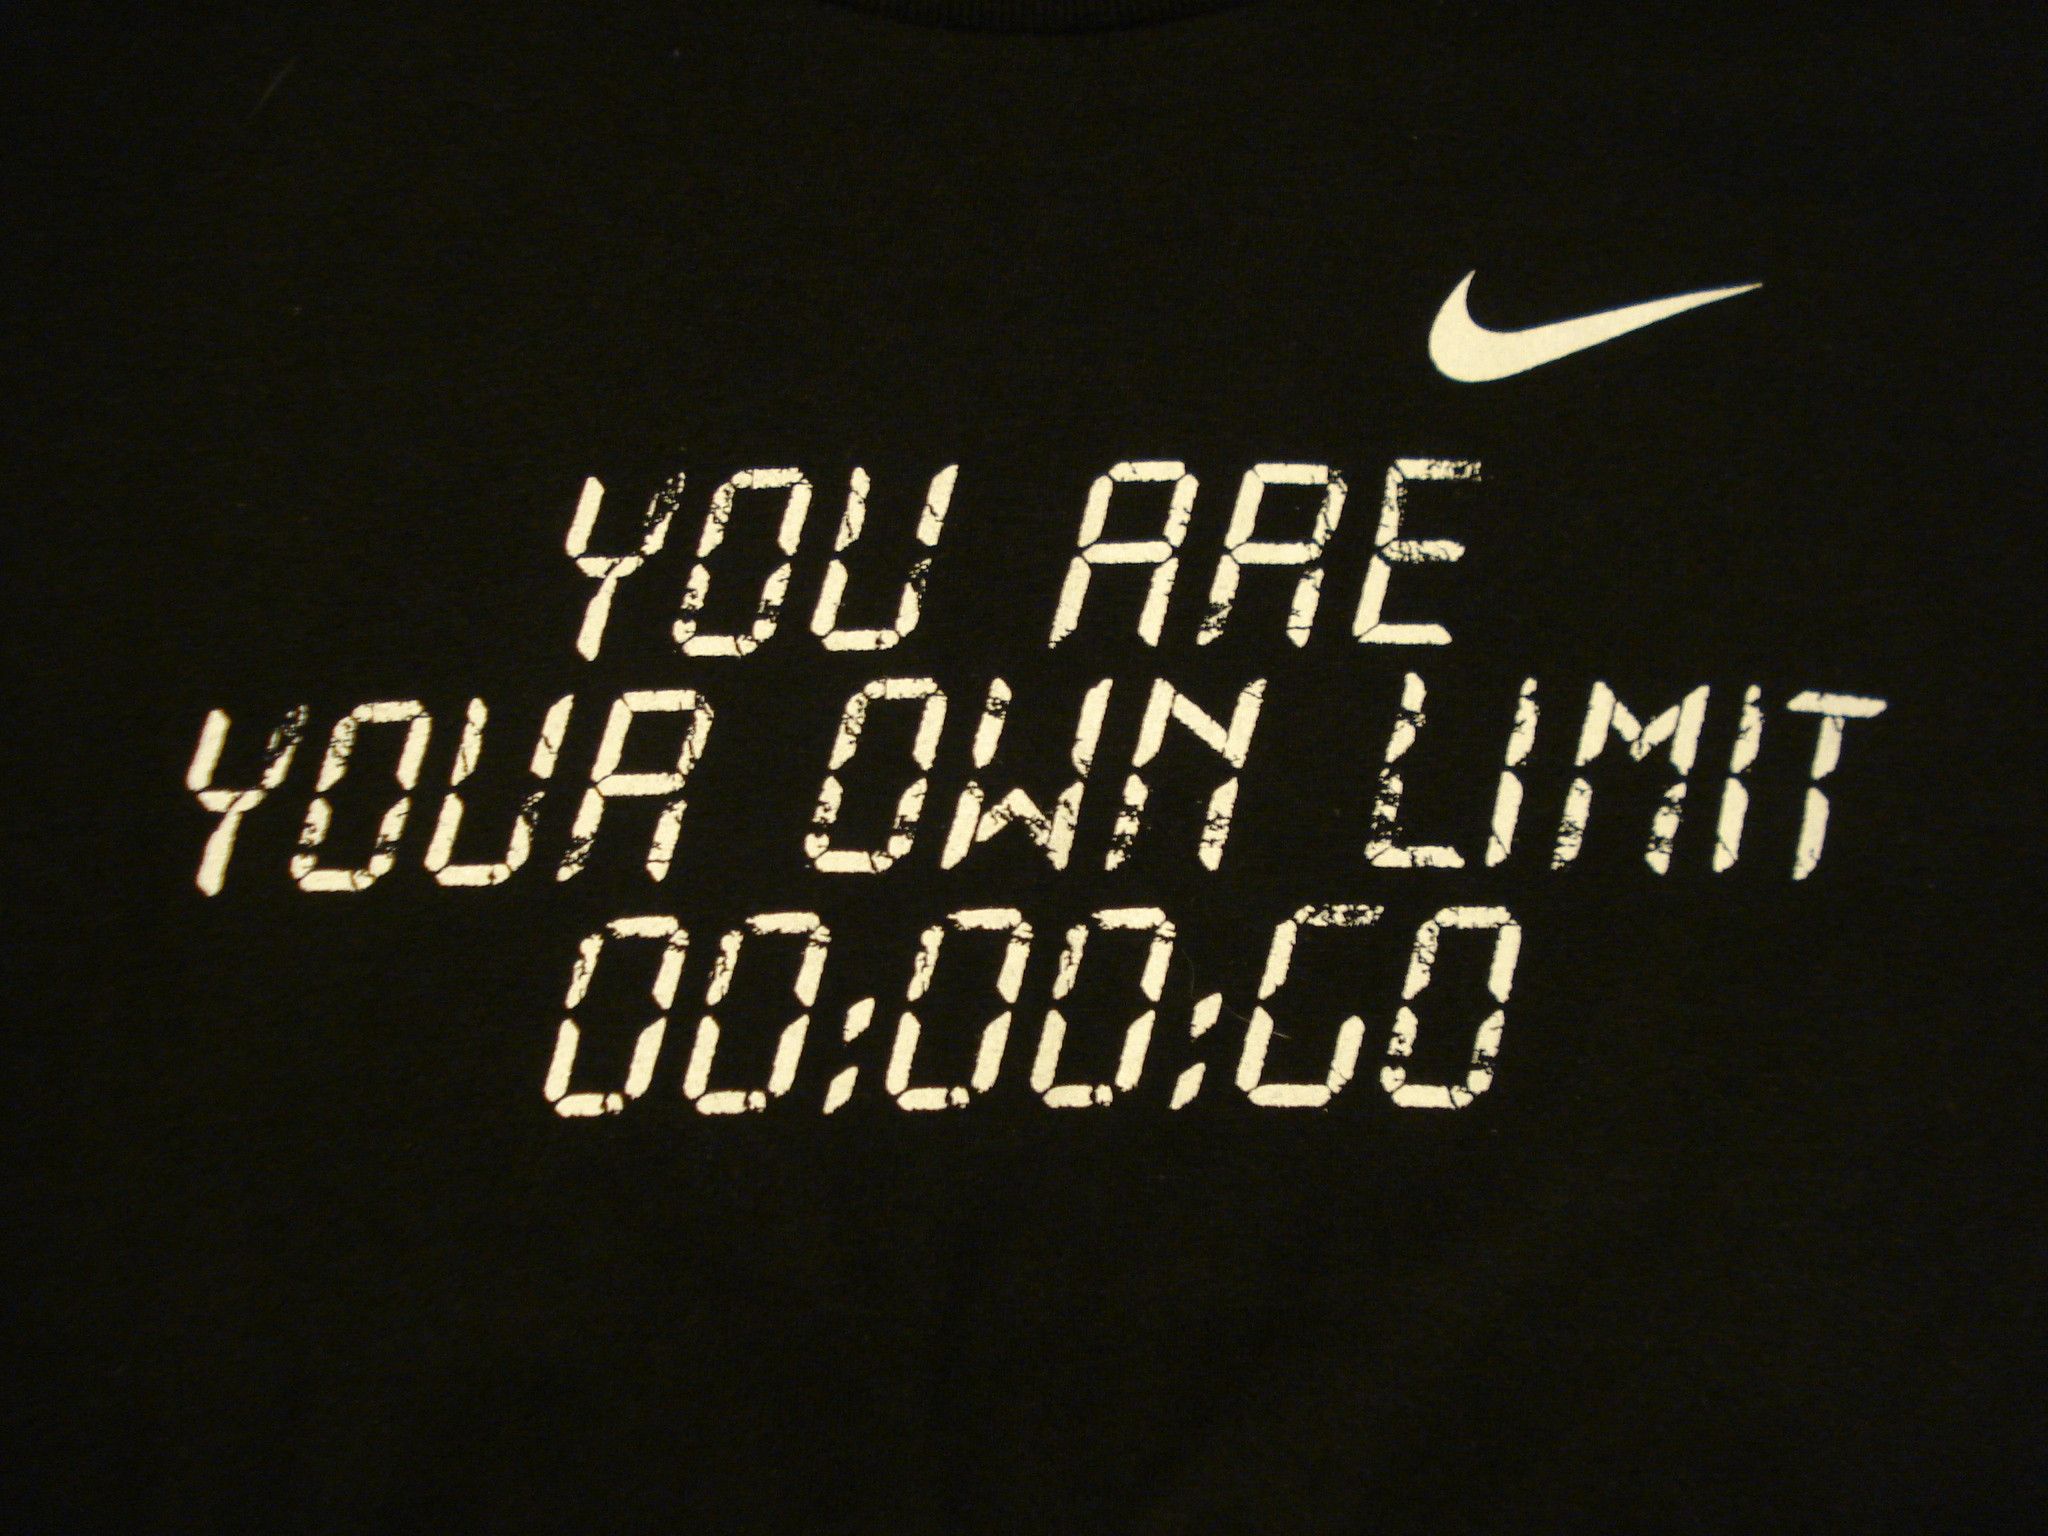 Nike Motivational iPhone Background